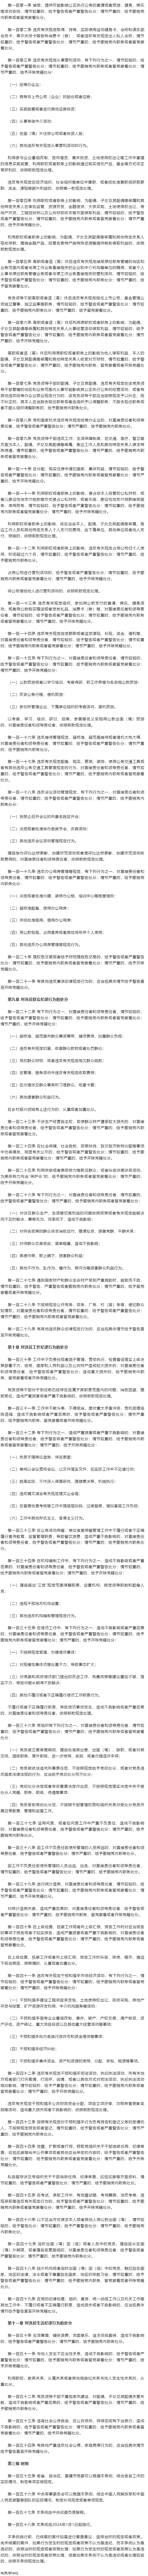 中共中央印发《中国共产党纪律处分条例》 3.png